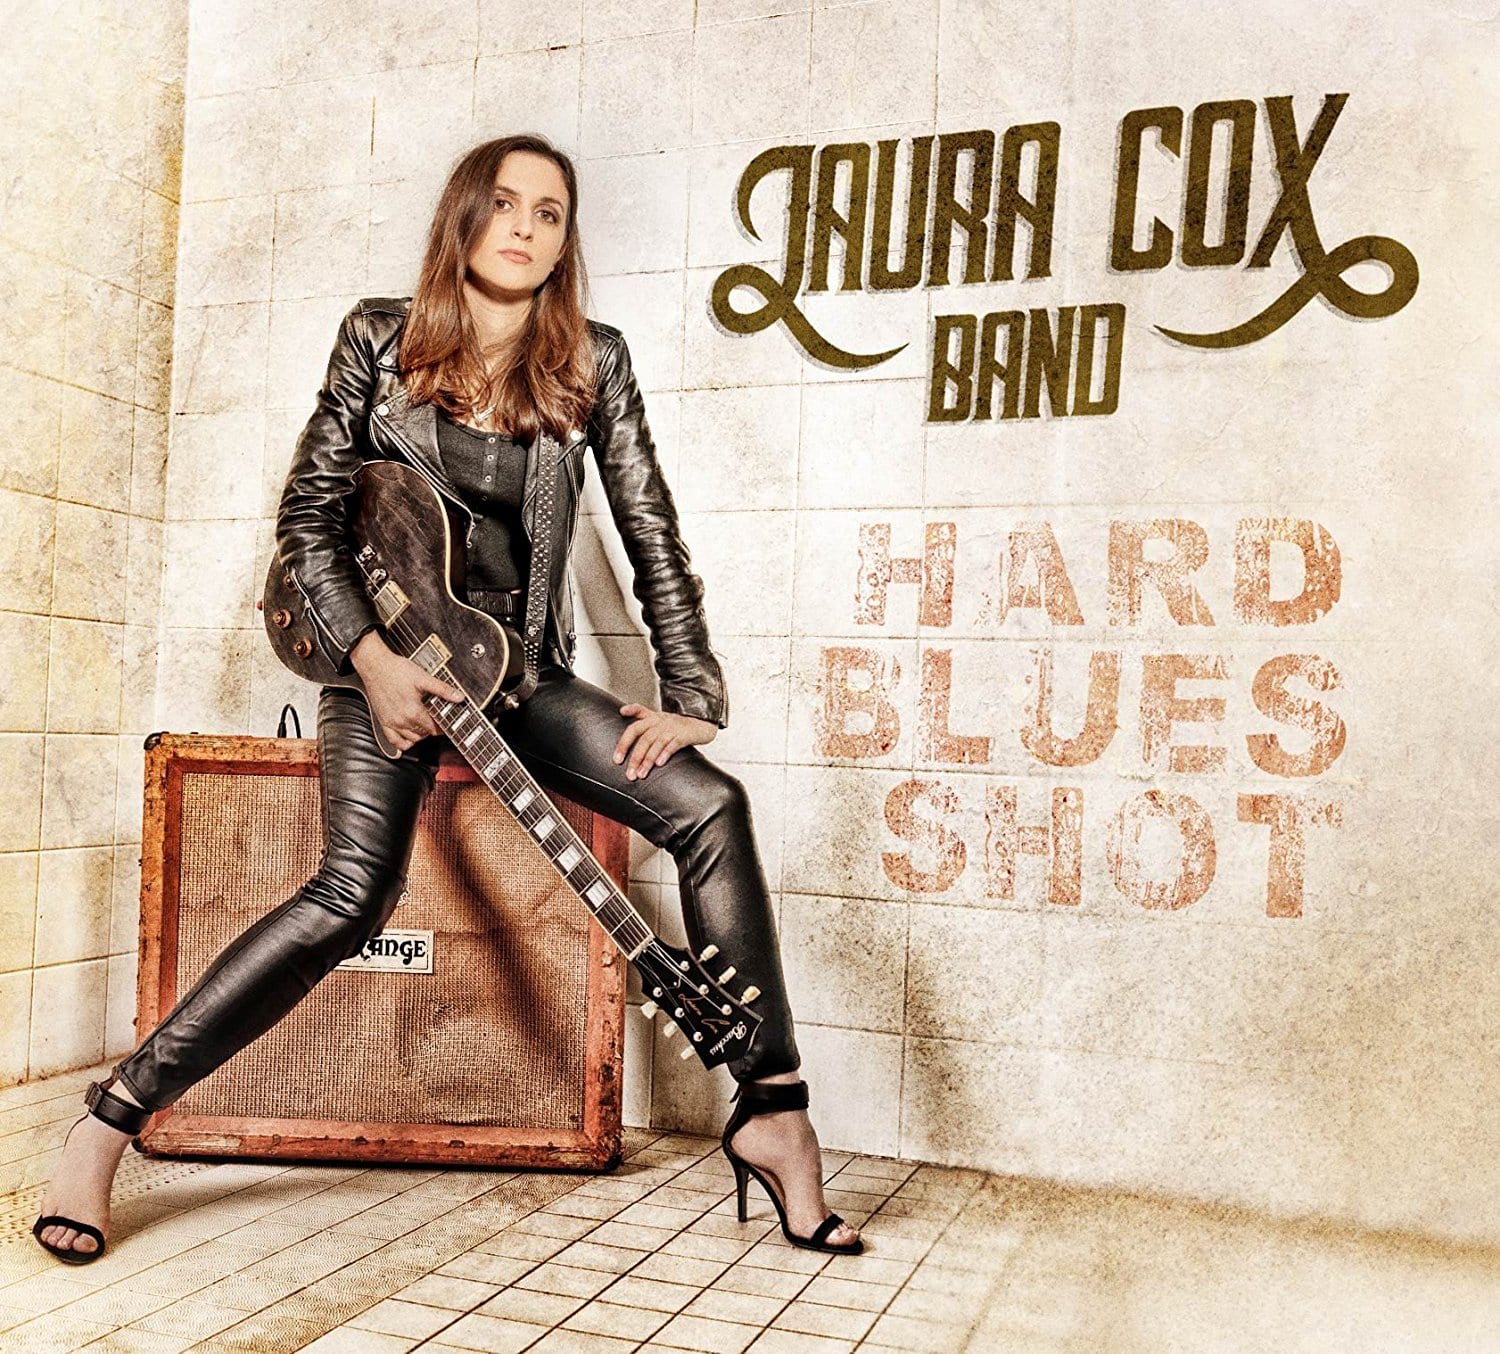 LAURA COX – Hard Blues Shot